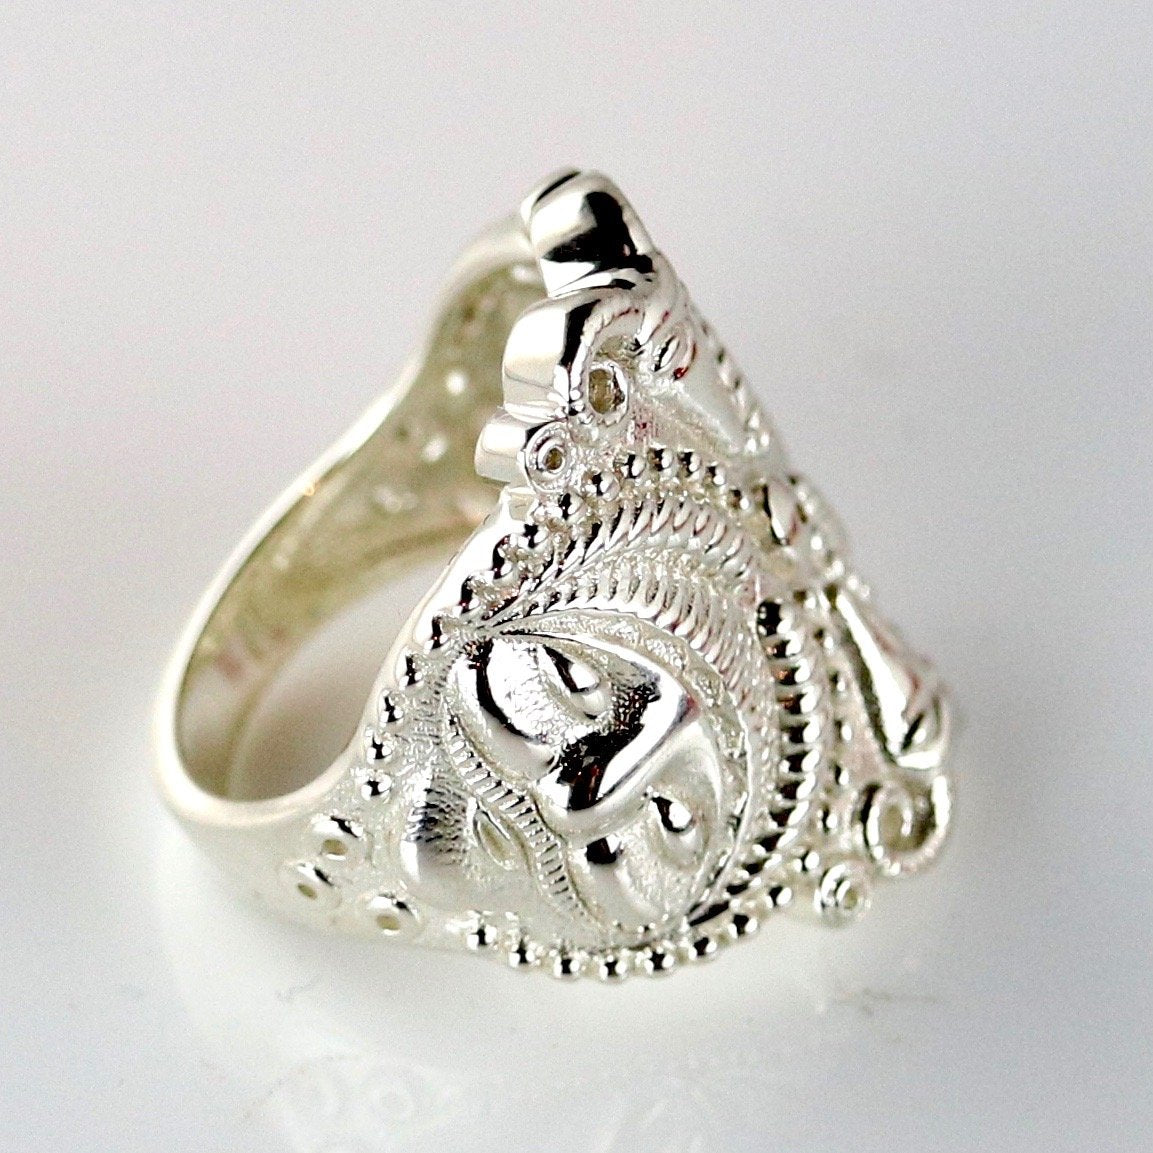 Splendor of the Celts Ring - Silver